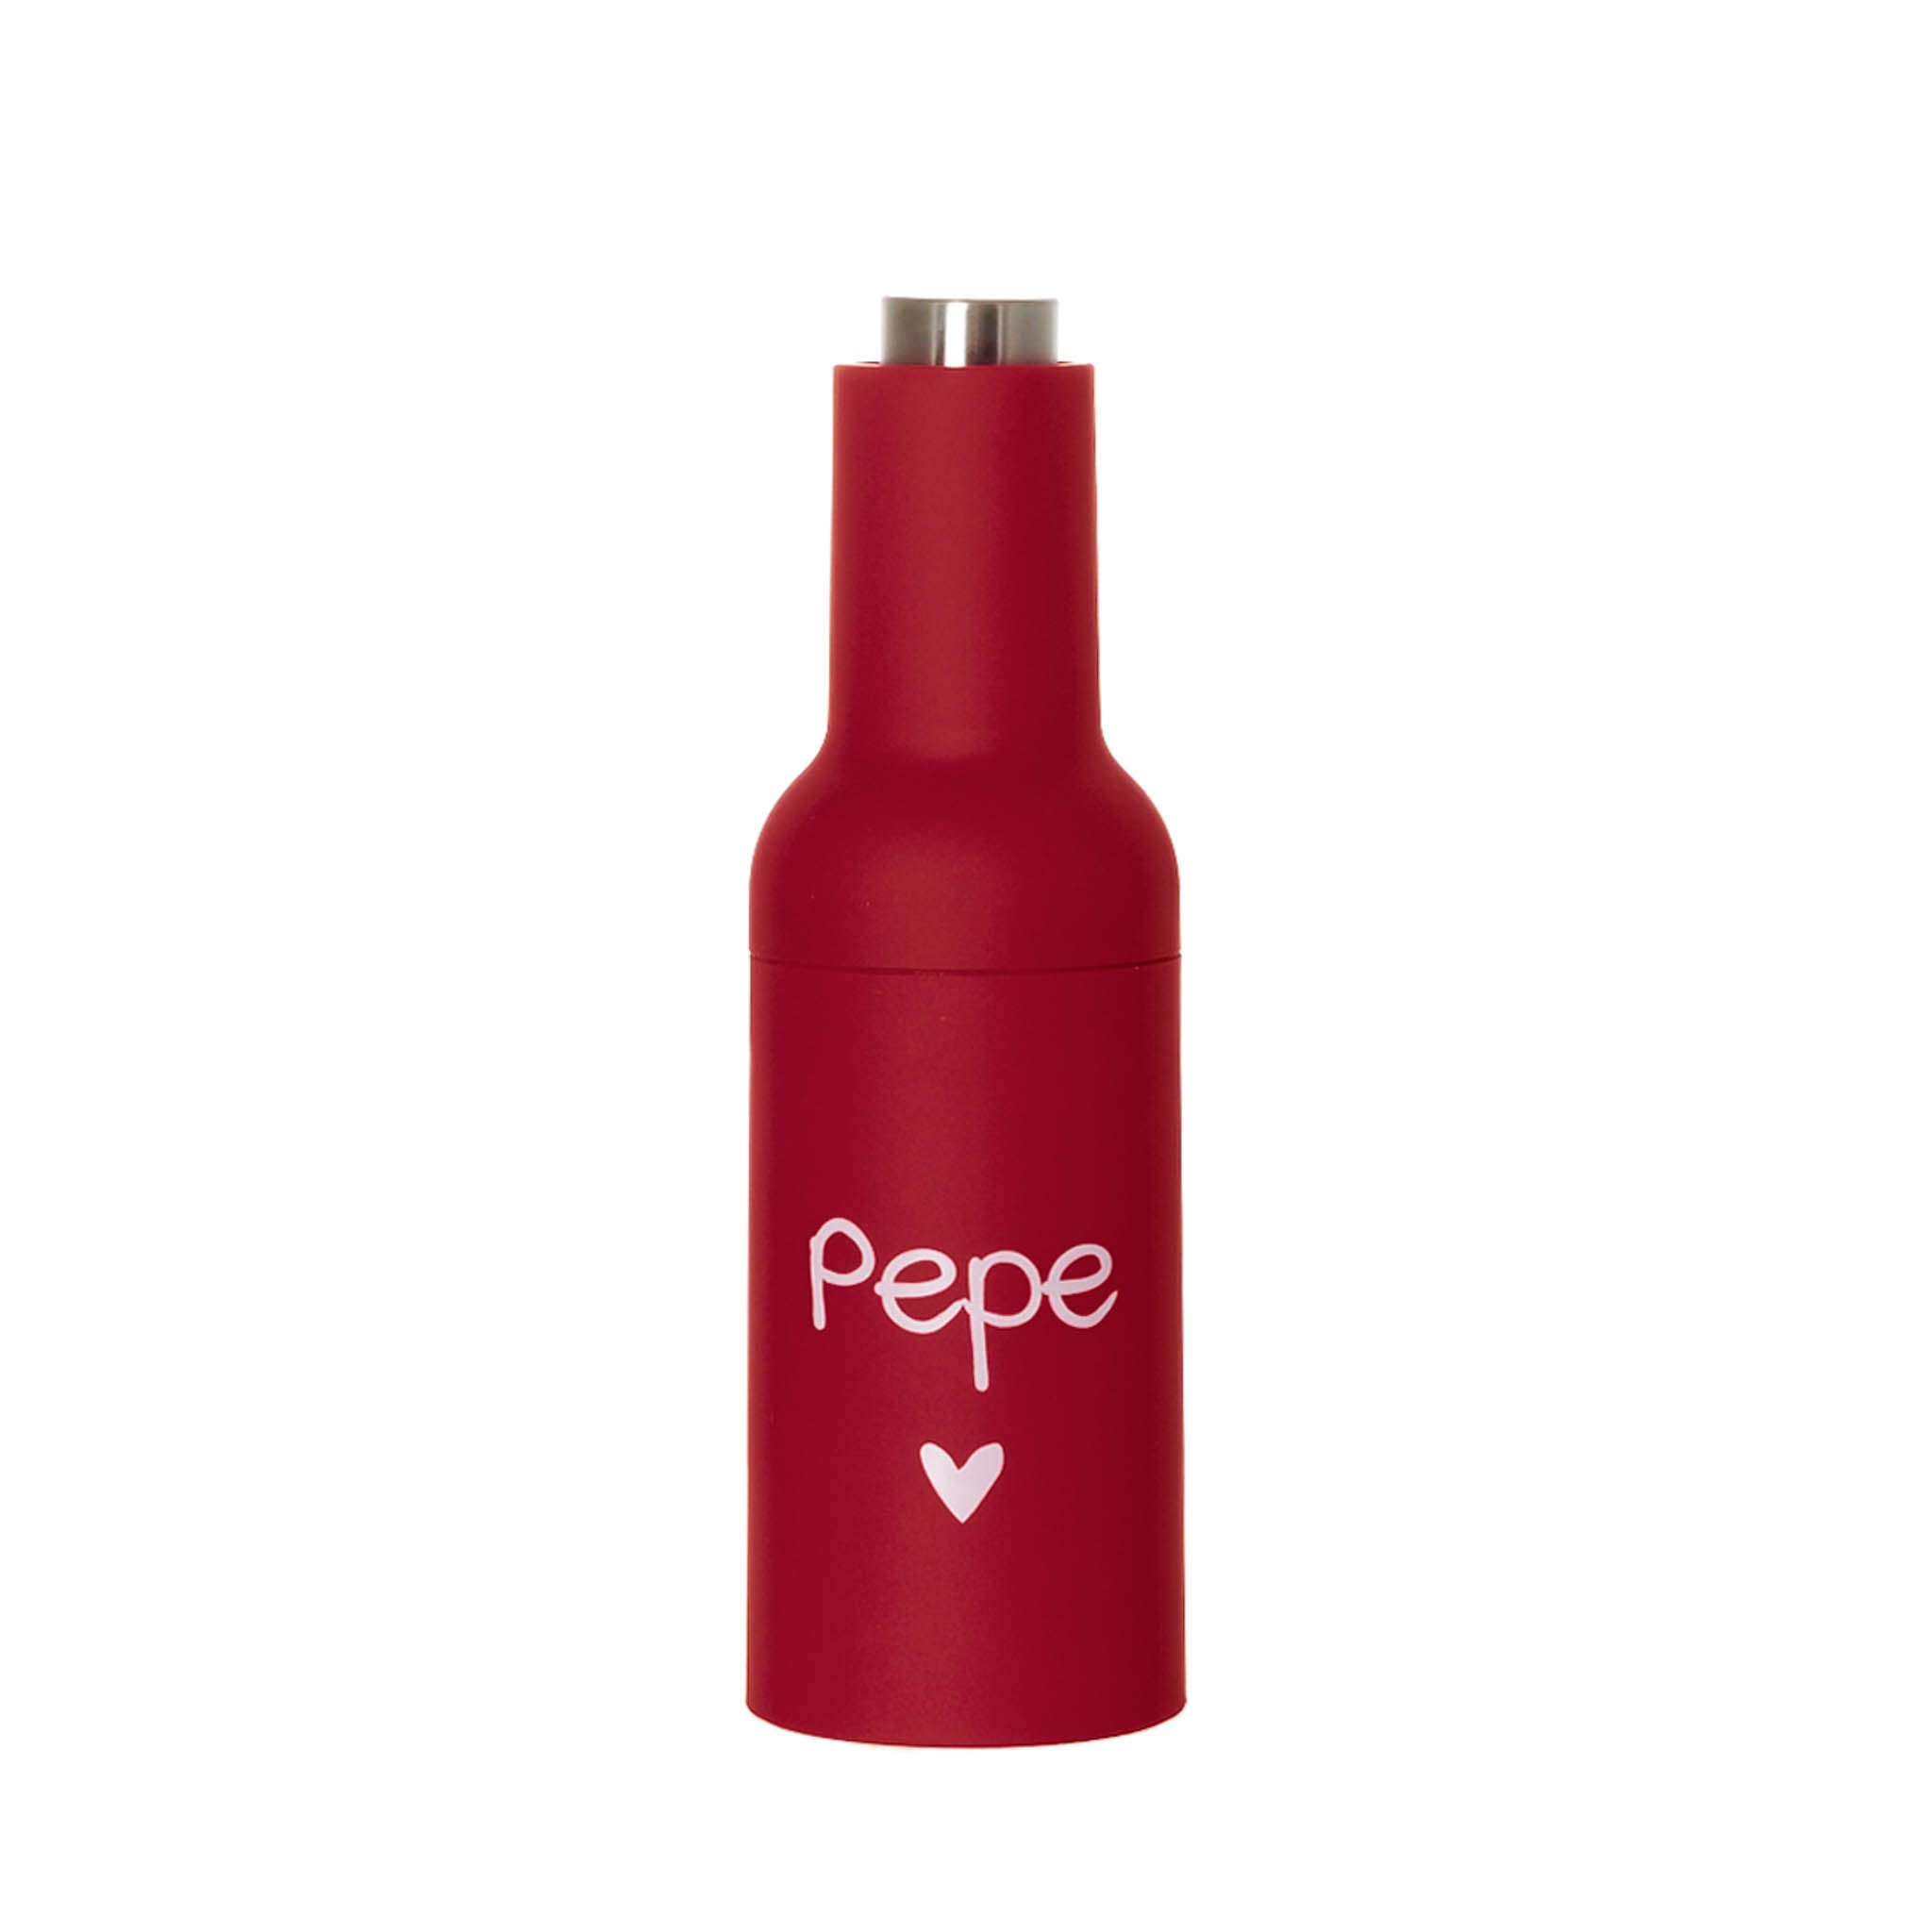 Elektrische Pfeffermühle "Pepe" mit Herz